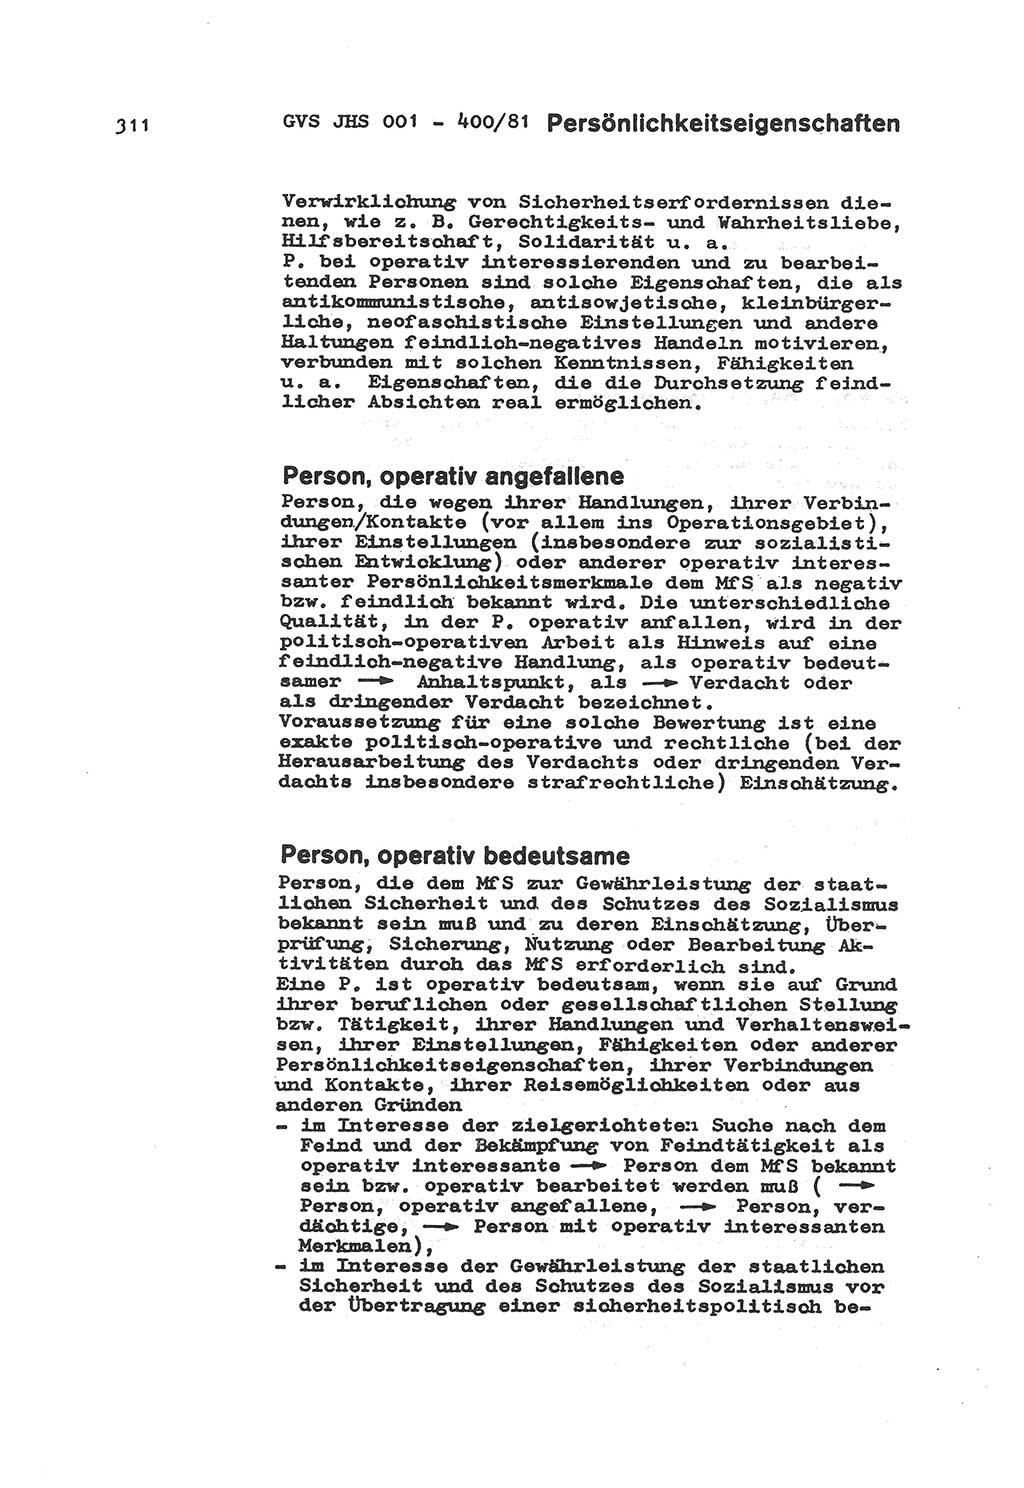 Wörterbuch der politisch-operativen Arbeit, Ministerium für Staatssicherheit (MfS) [Deutsche Demokratische Republik (DDR)], Juristische Hochschule (JHS), Geheime Verschlußsache (GVS) o001-400/81, Potsdam 1985, Blatt 311 (Wb. pol.-op. Arb. MfS DDR JHS GVS o001-400/81 1985, Bl. 311)